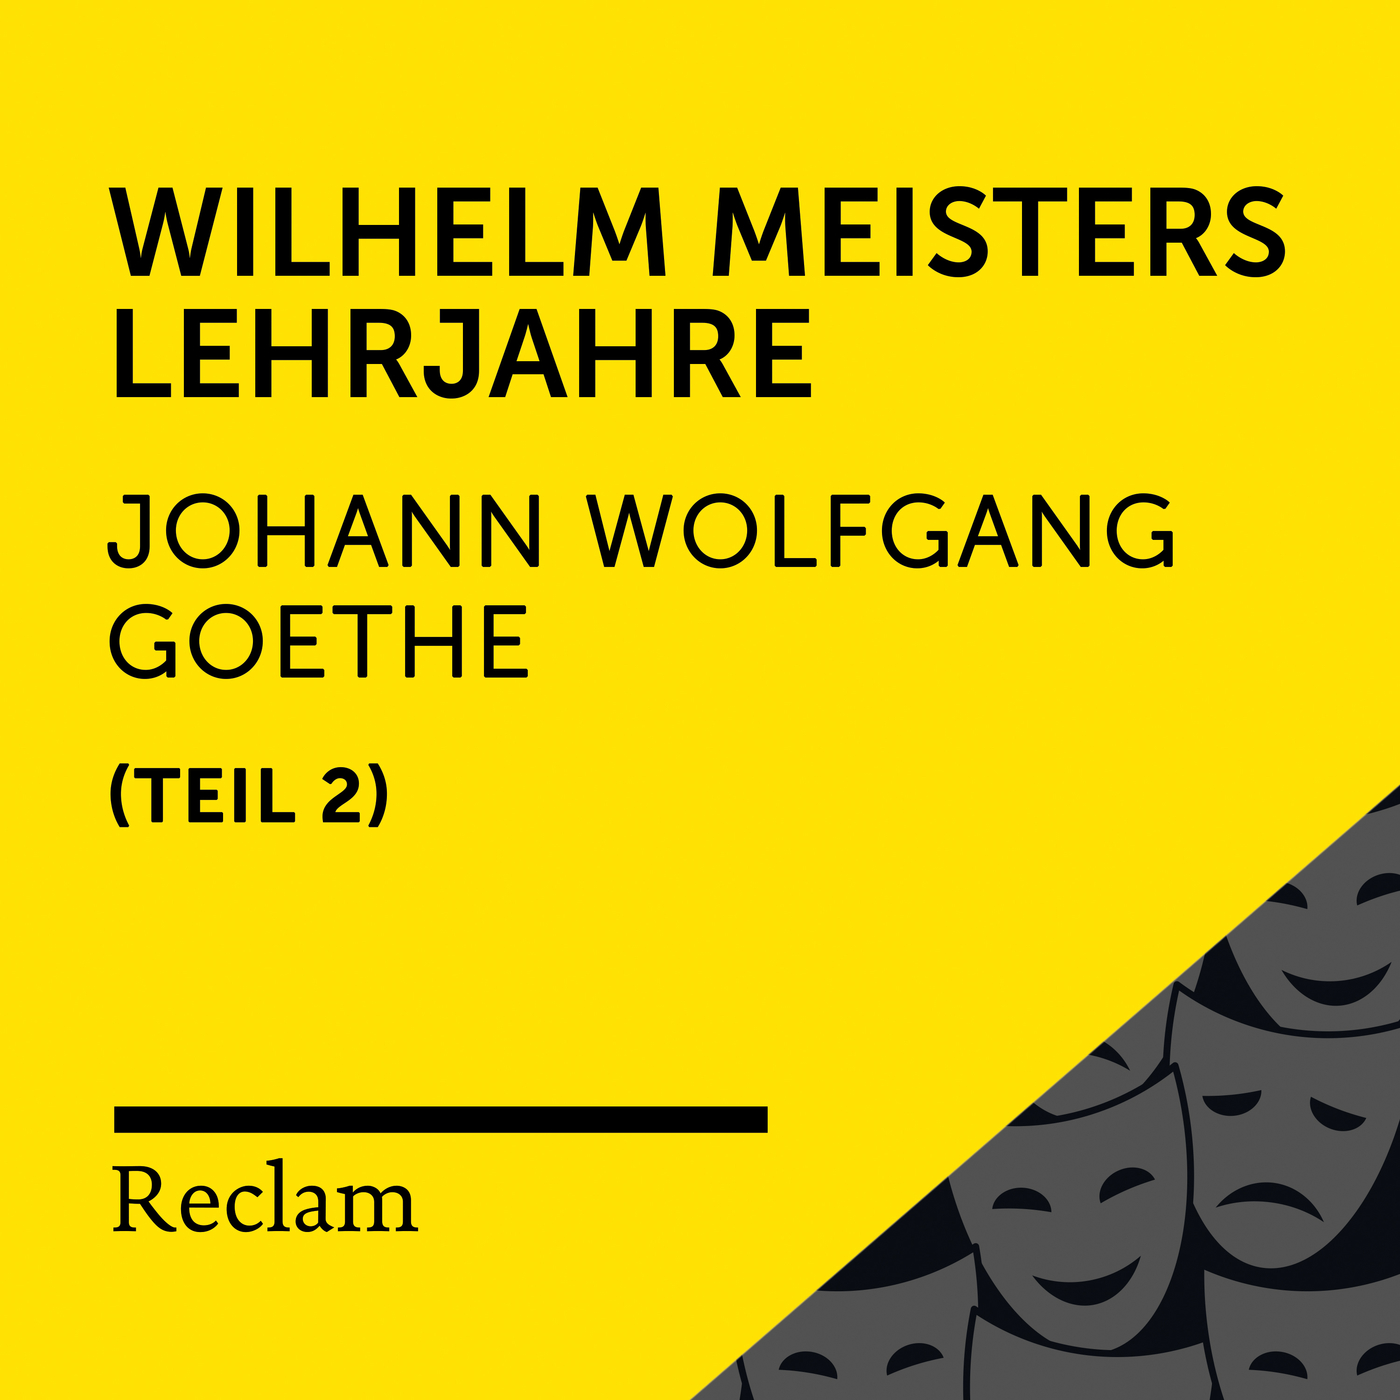 Wilhelm Meisters Lehrjahre, Buch 6 (Kapitel I, Teil 21)